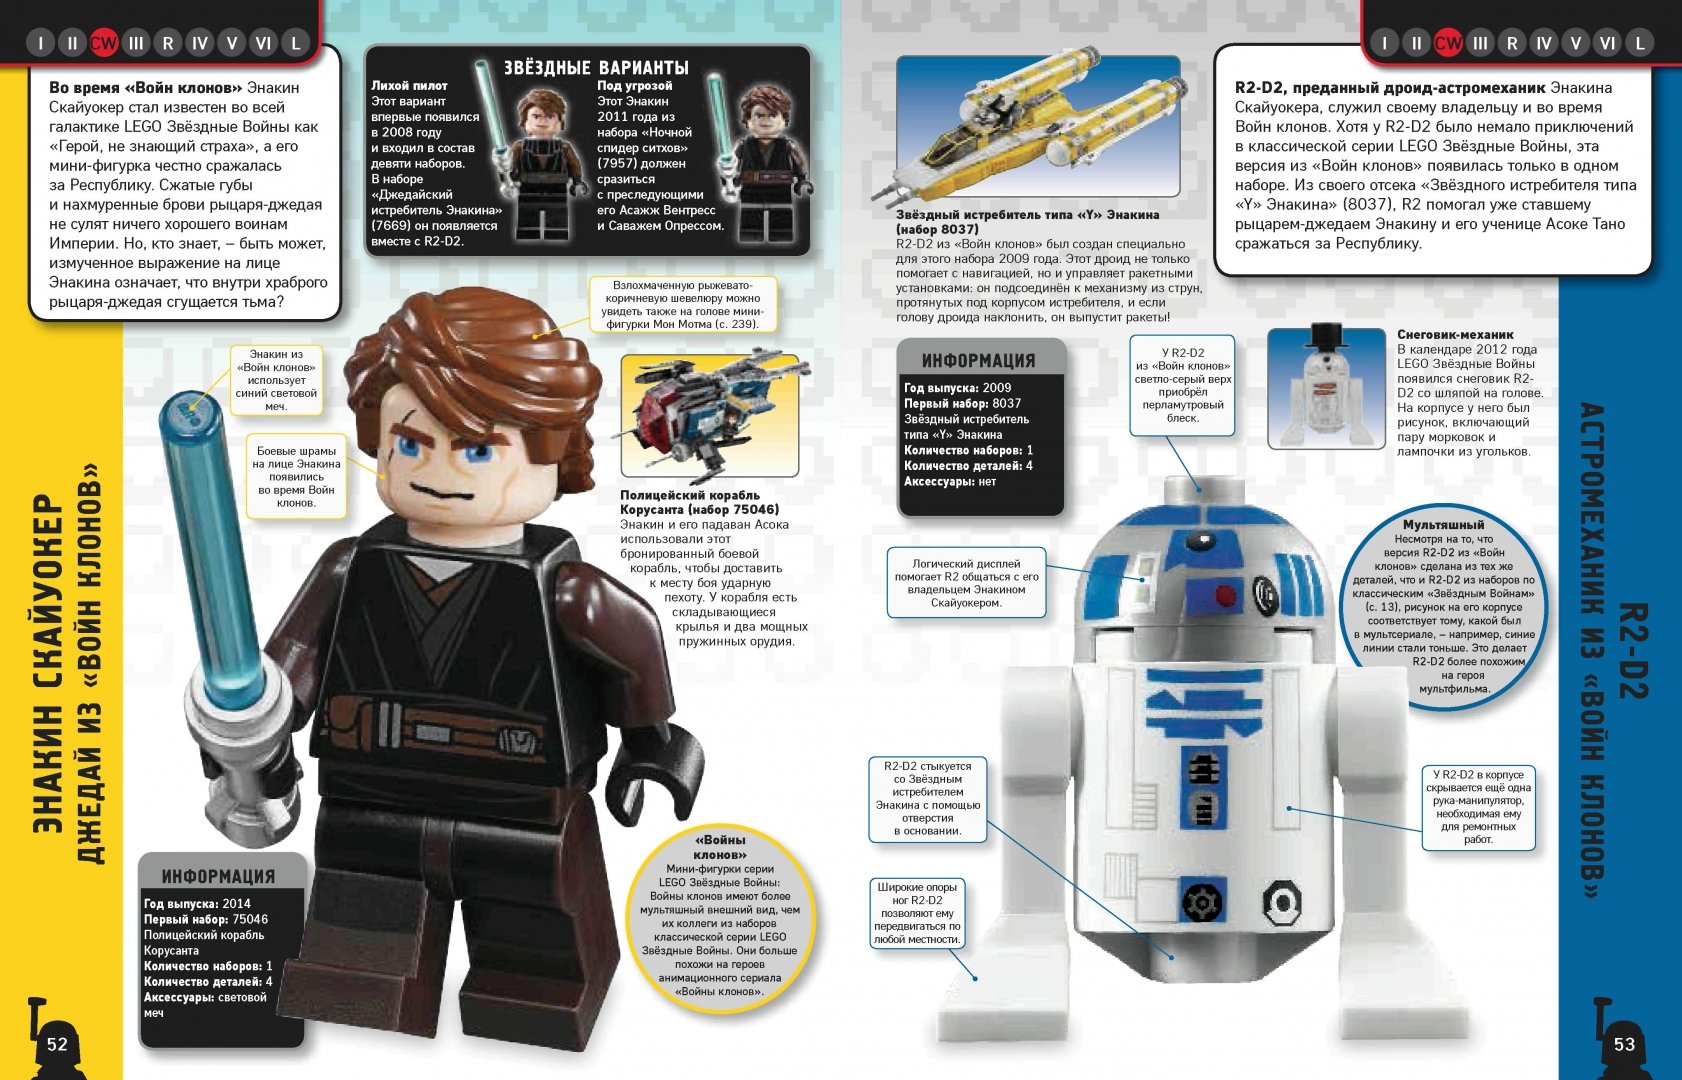 Иллюстрация 1 из 25 для LEGO Star Wars. Полная коллекция мини-фигурок со всей галактики - Долан, Доусетт, Лэст | Лабиринт - книги. Источник: Лабиринт